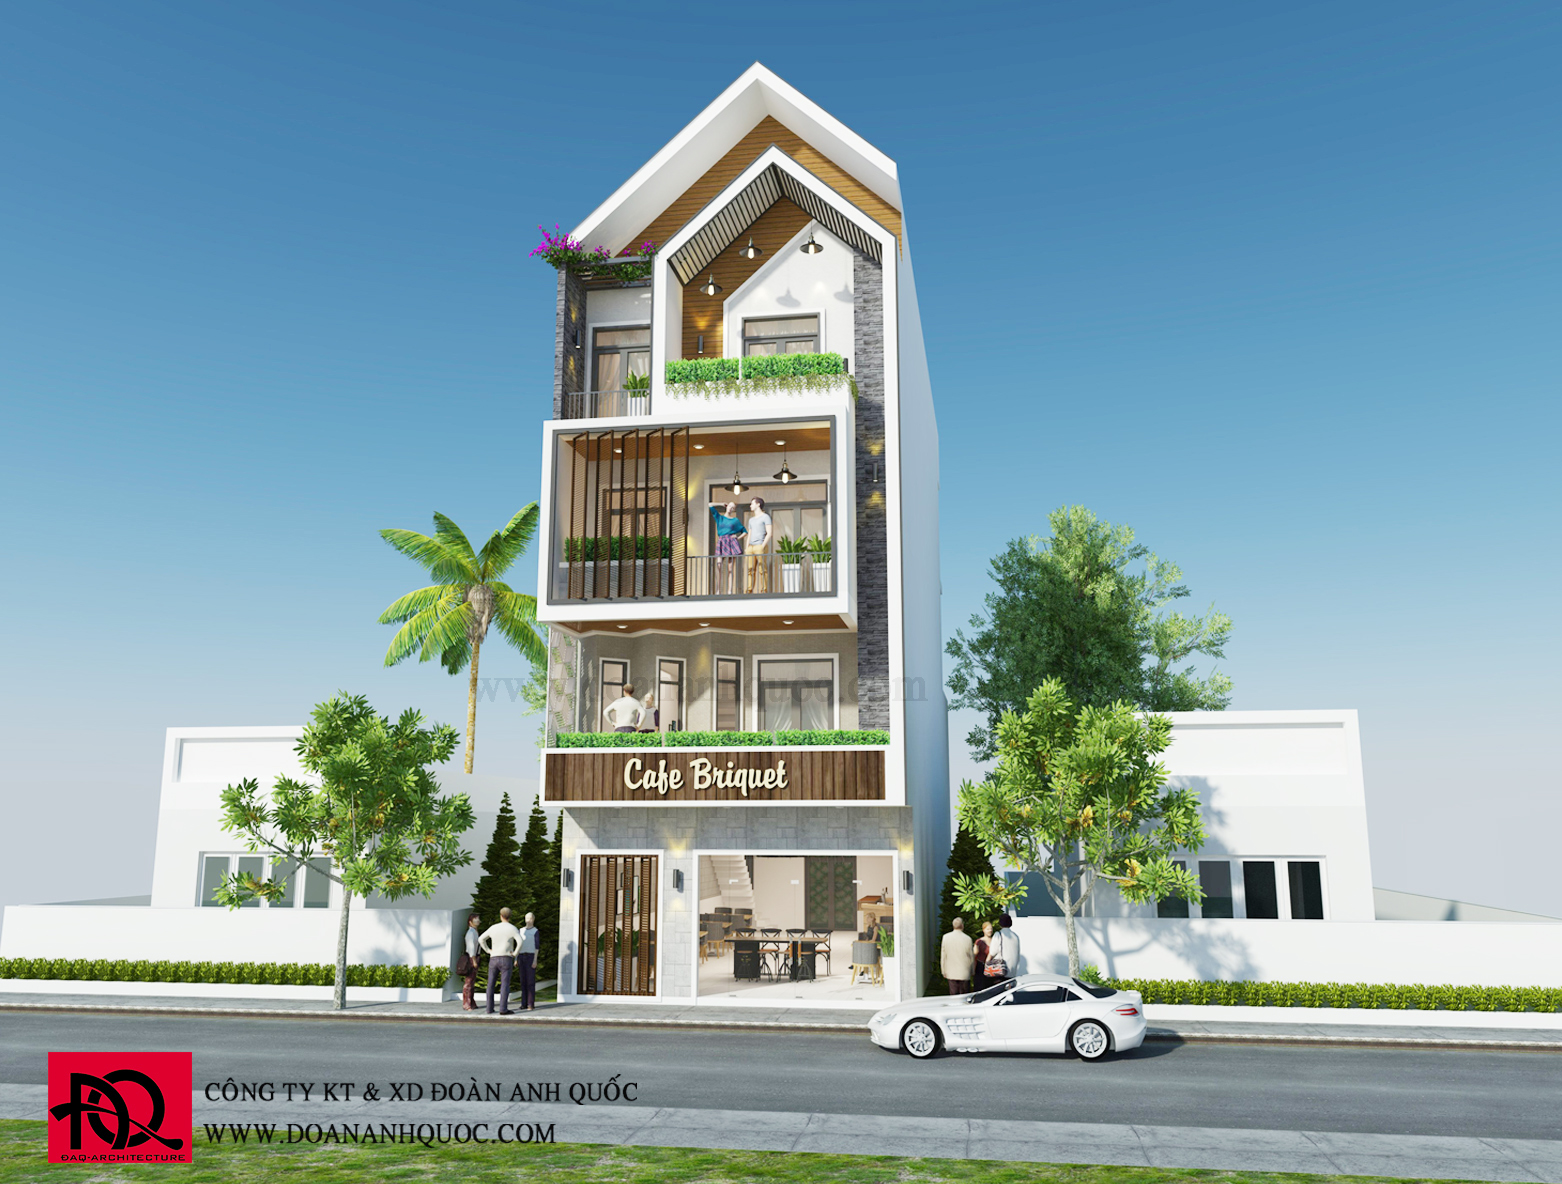 Thiết kế nhà hiện đại 7x20 khu phố biển Ocean Dunes Phan Thiết ...